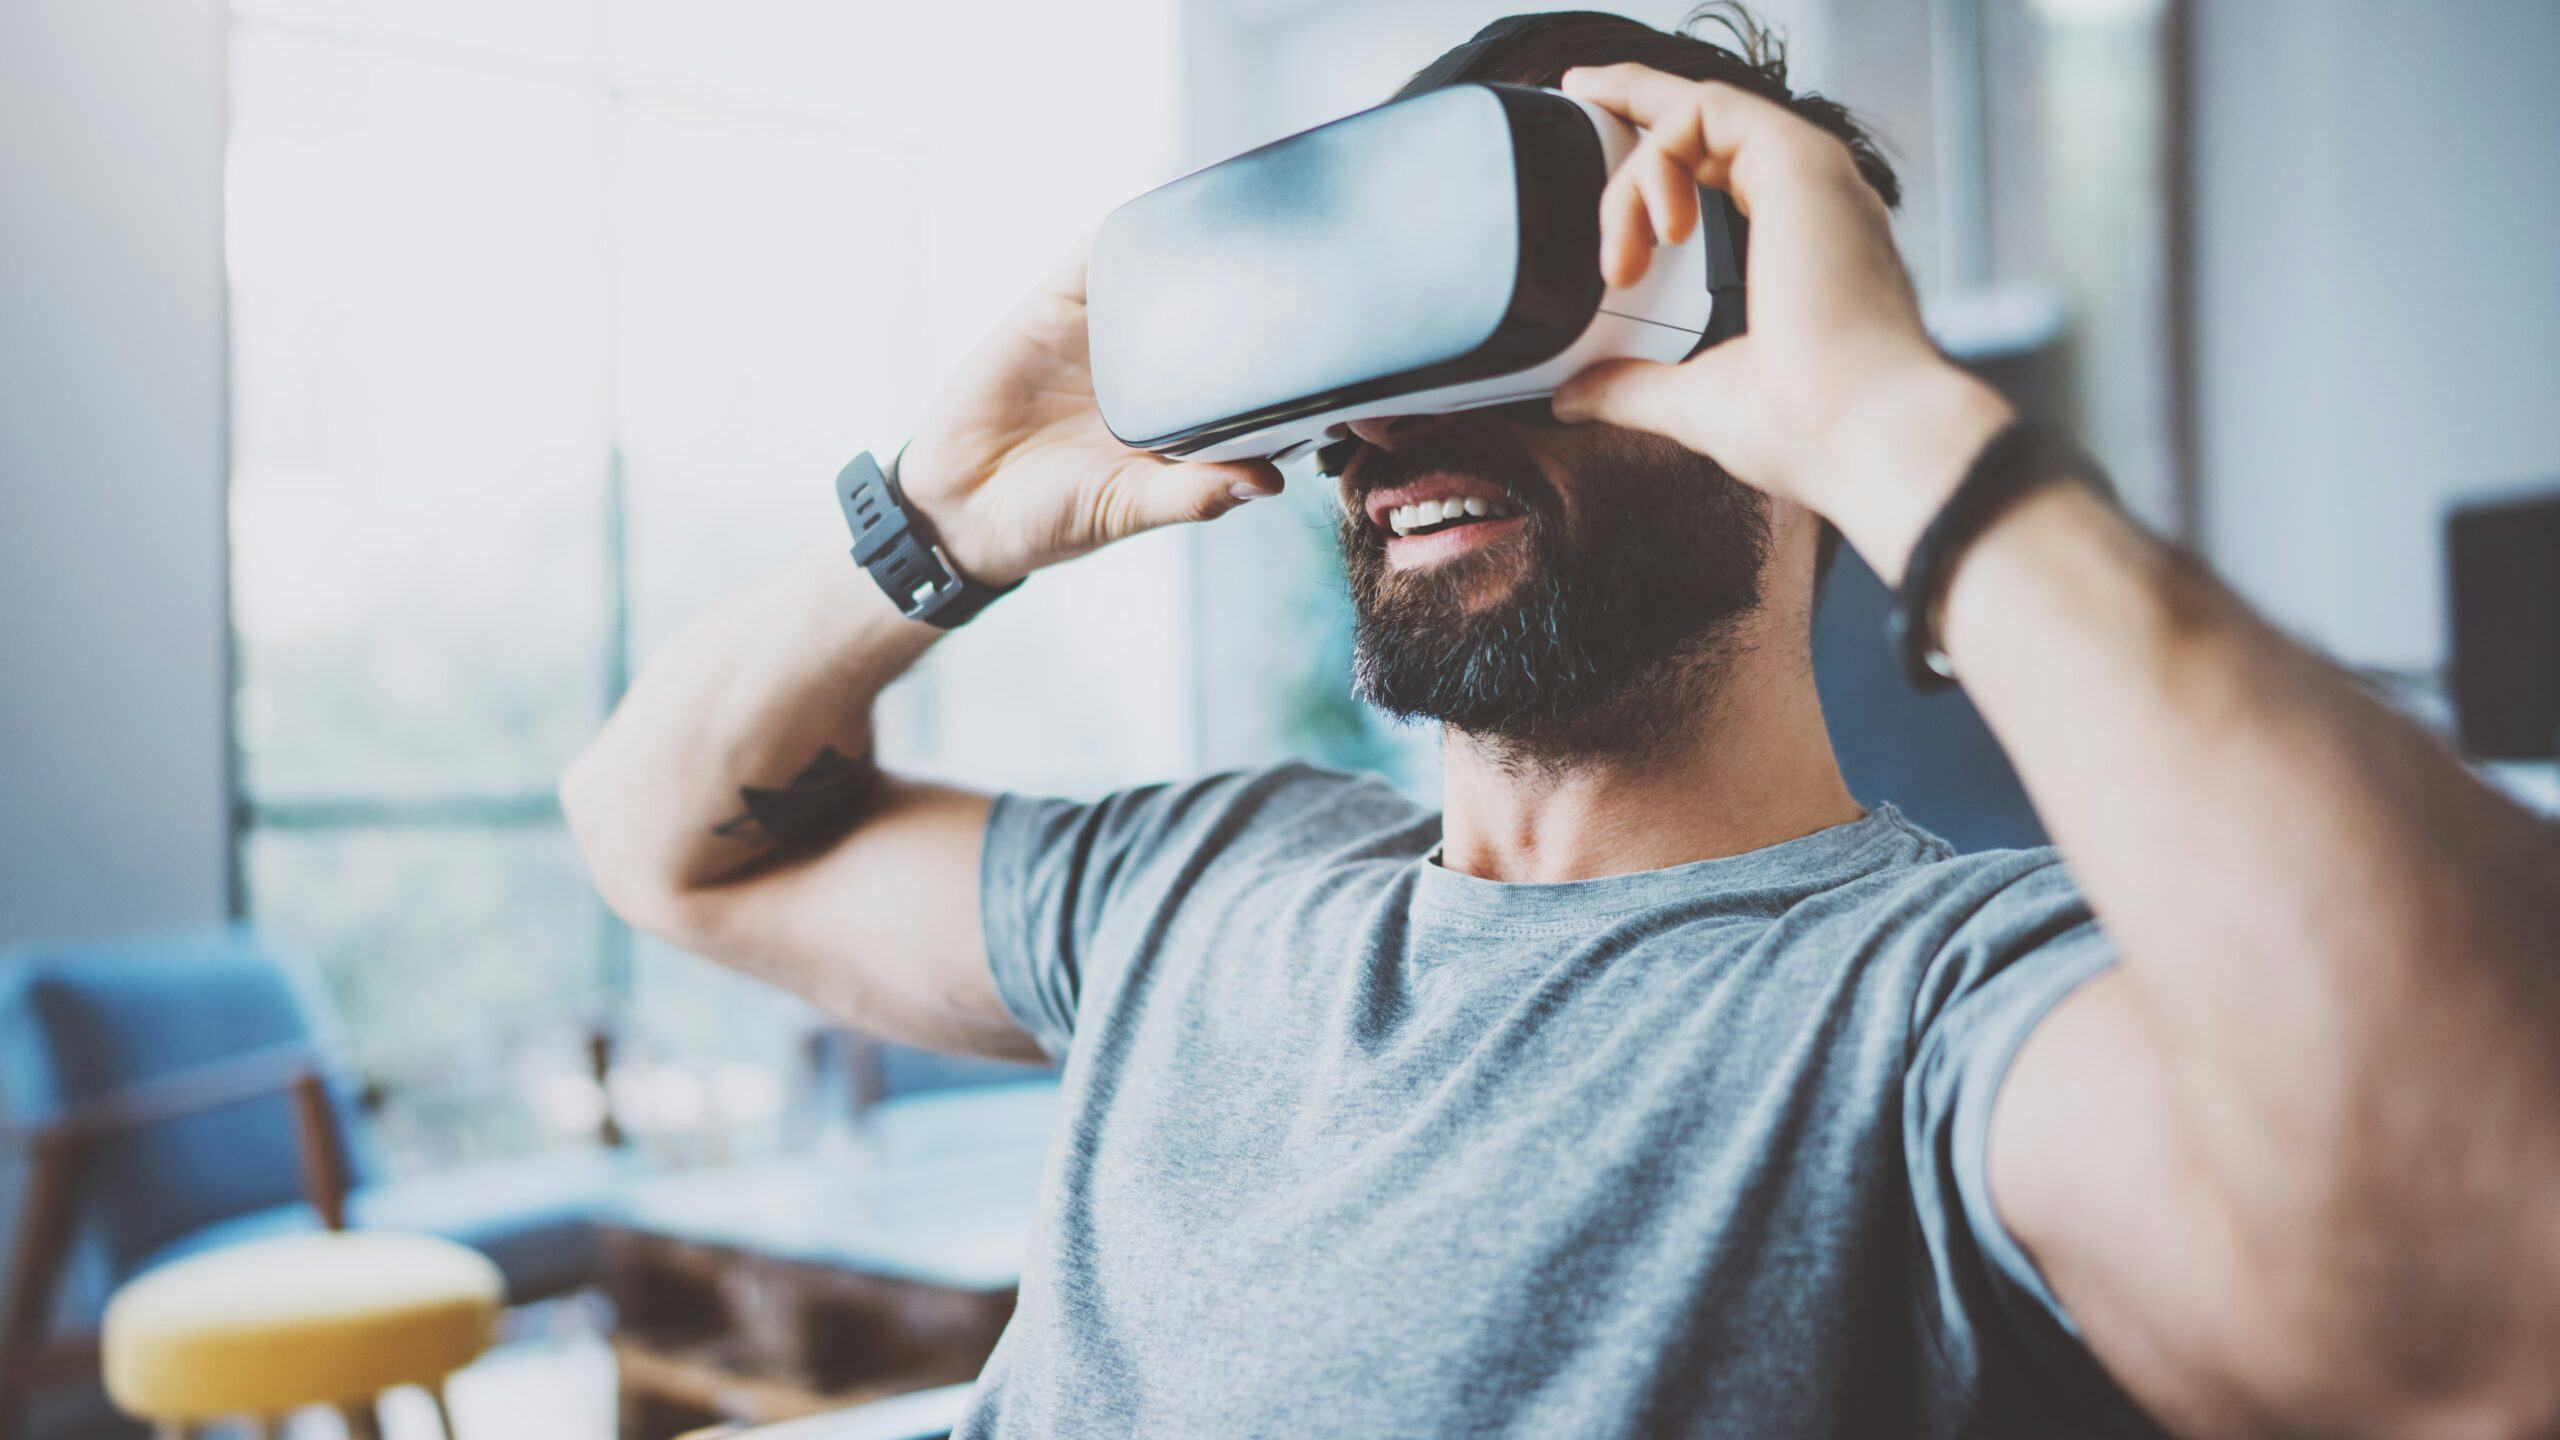 Event in hotel plannen met VR-bril: 'Duurzame oplossing, maar levensechte ervaring'